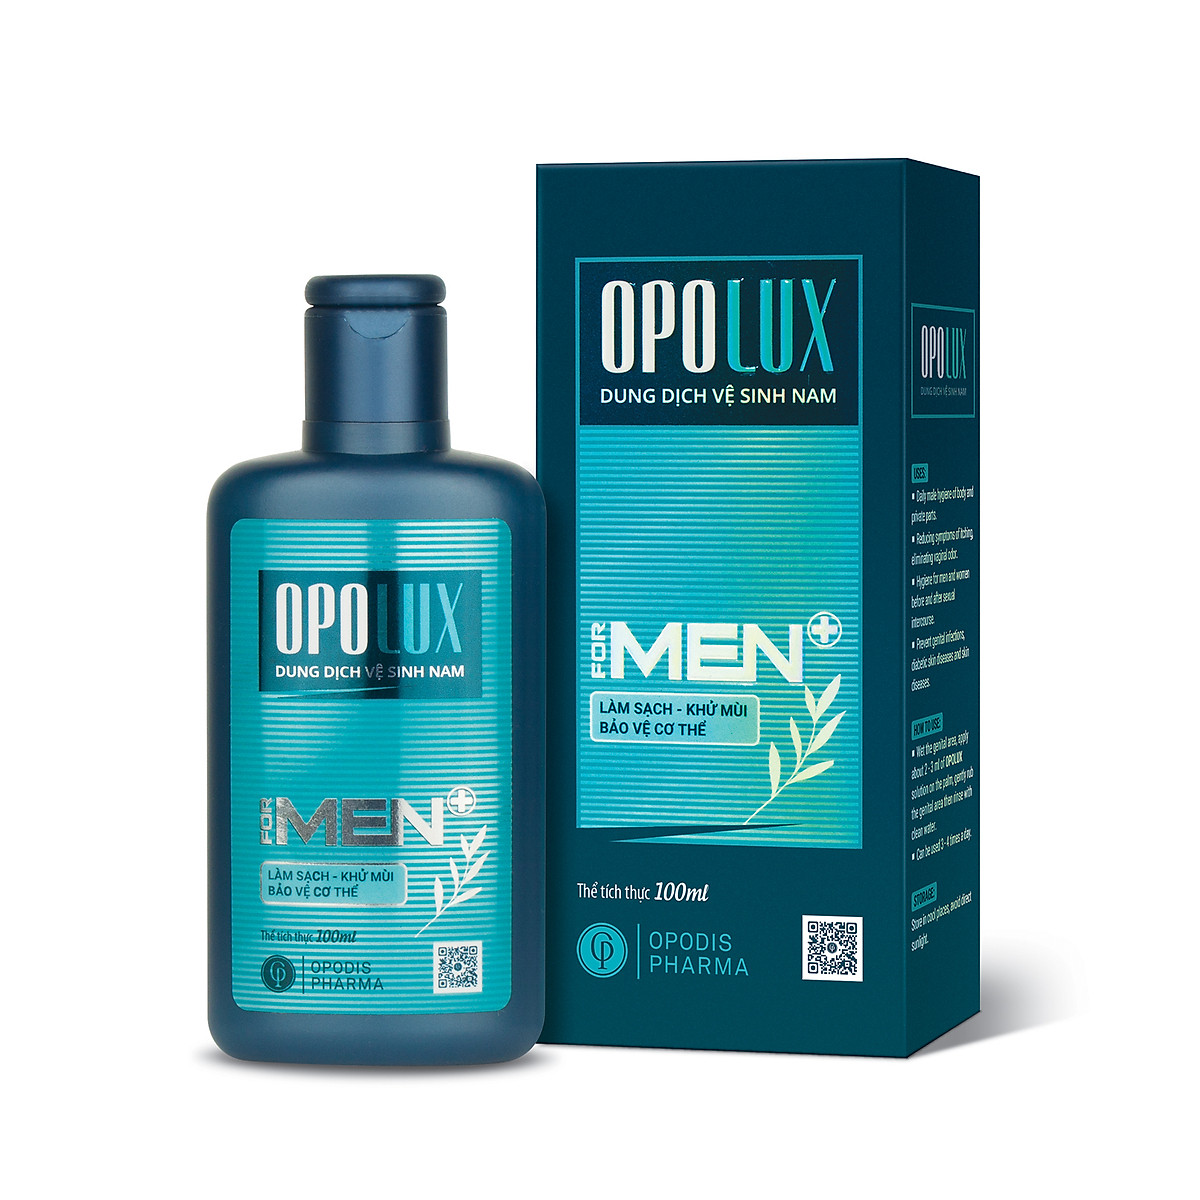 Dung dịch vệ sinh nam Opolux mùi thơm dễ chịu, quyến rũ giúp làm sạch, khử mùi, bảo vệ cơ...